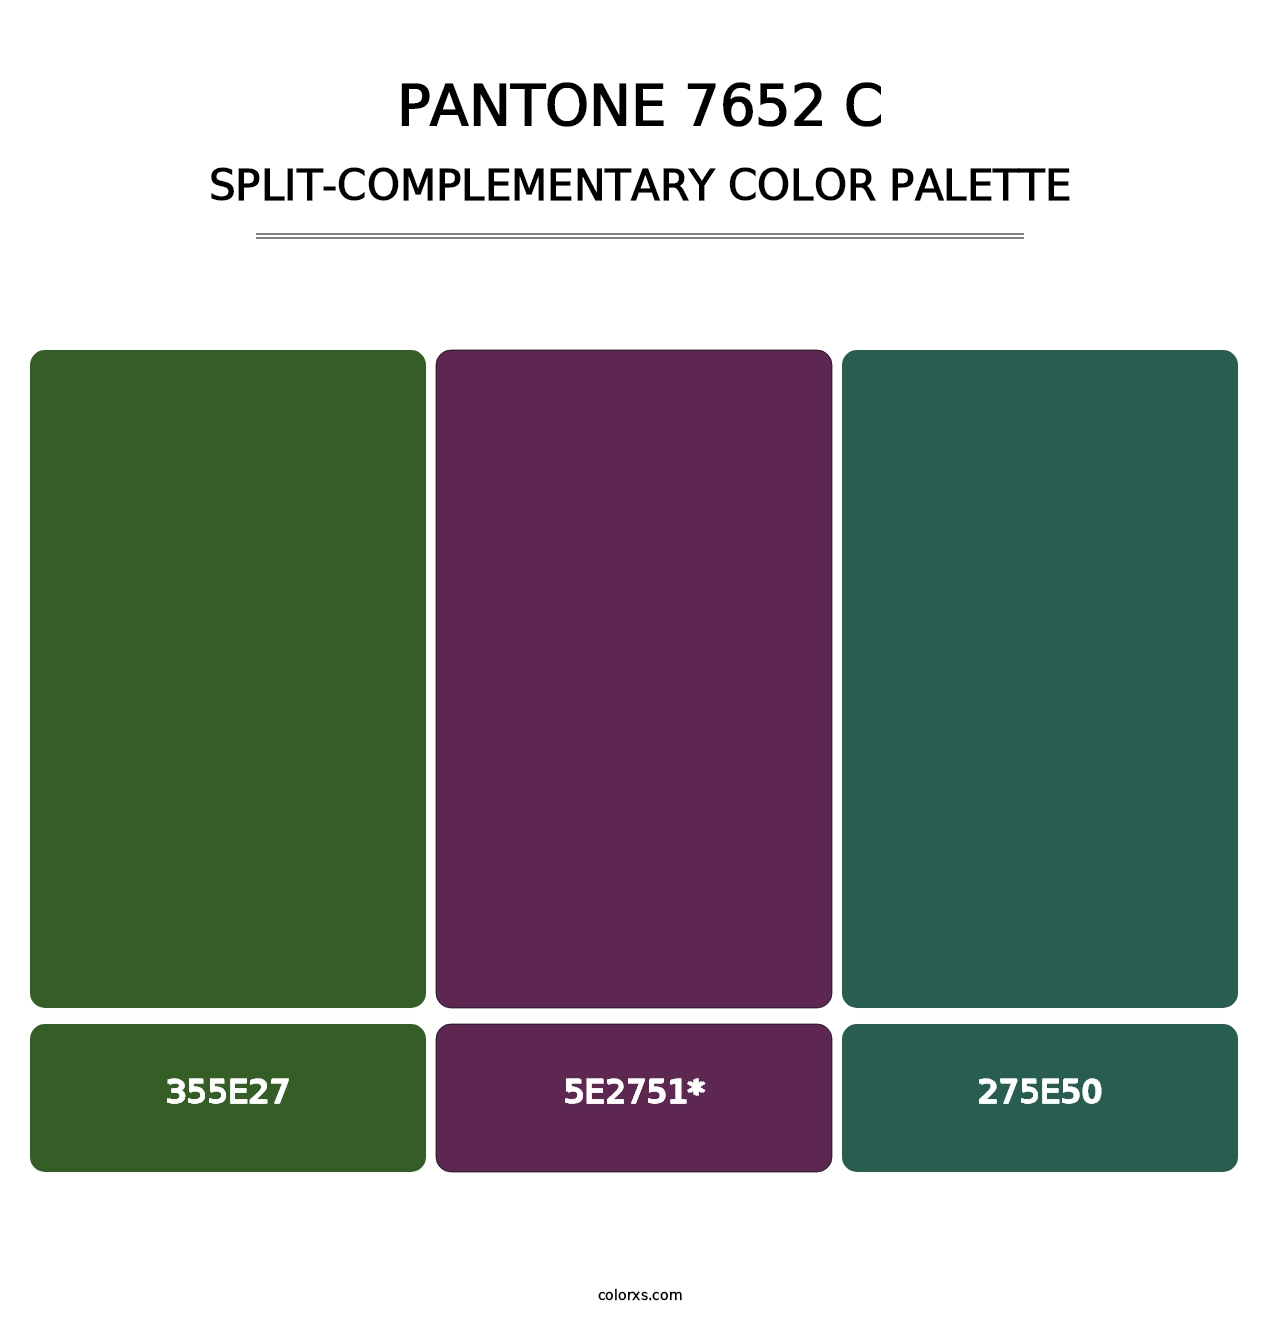 PANTONE 7652 C - Split-Complementary Color Palette